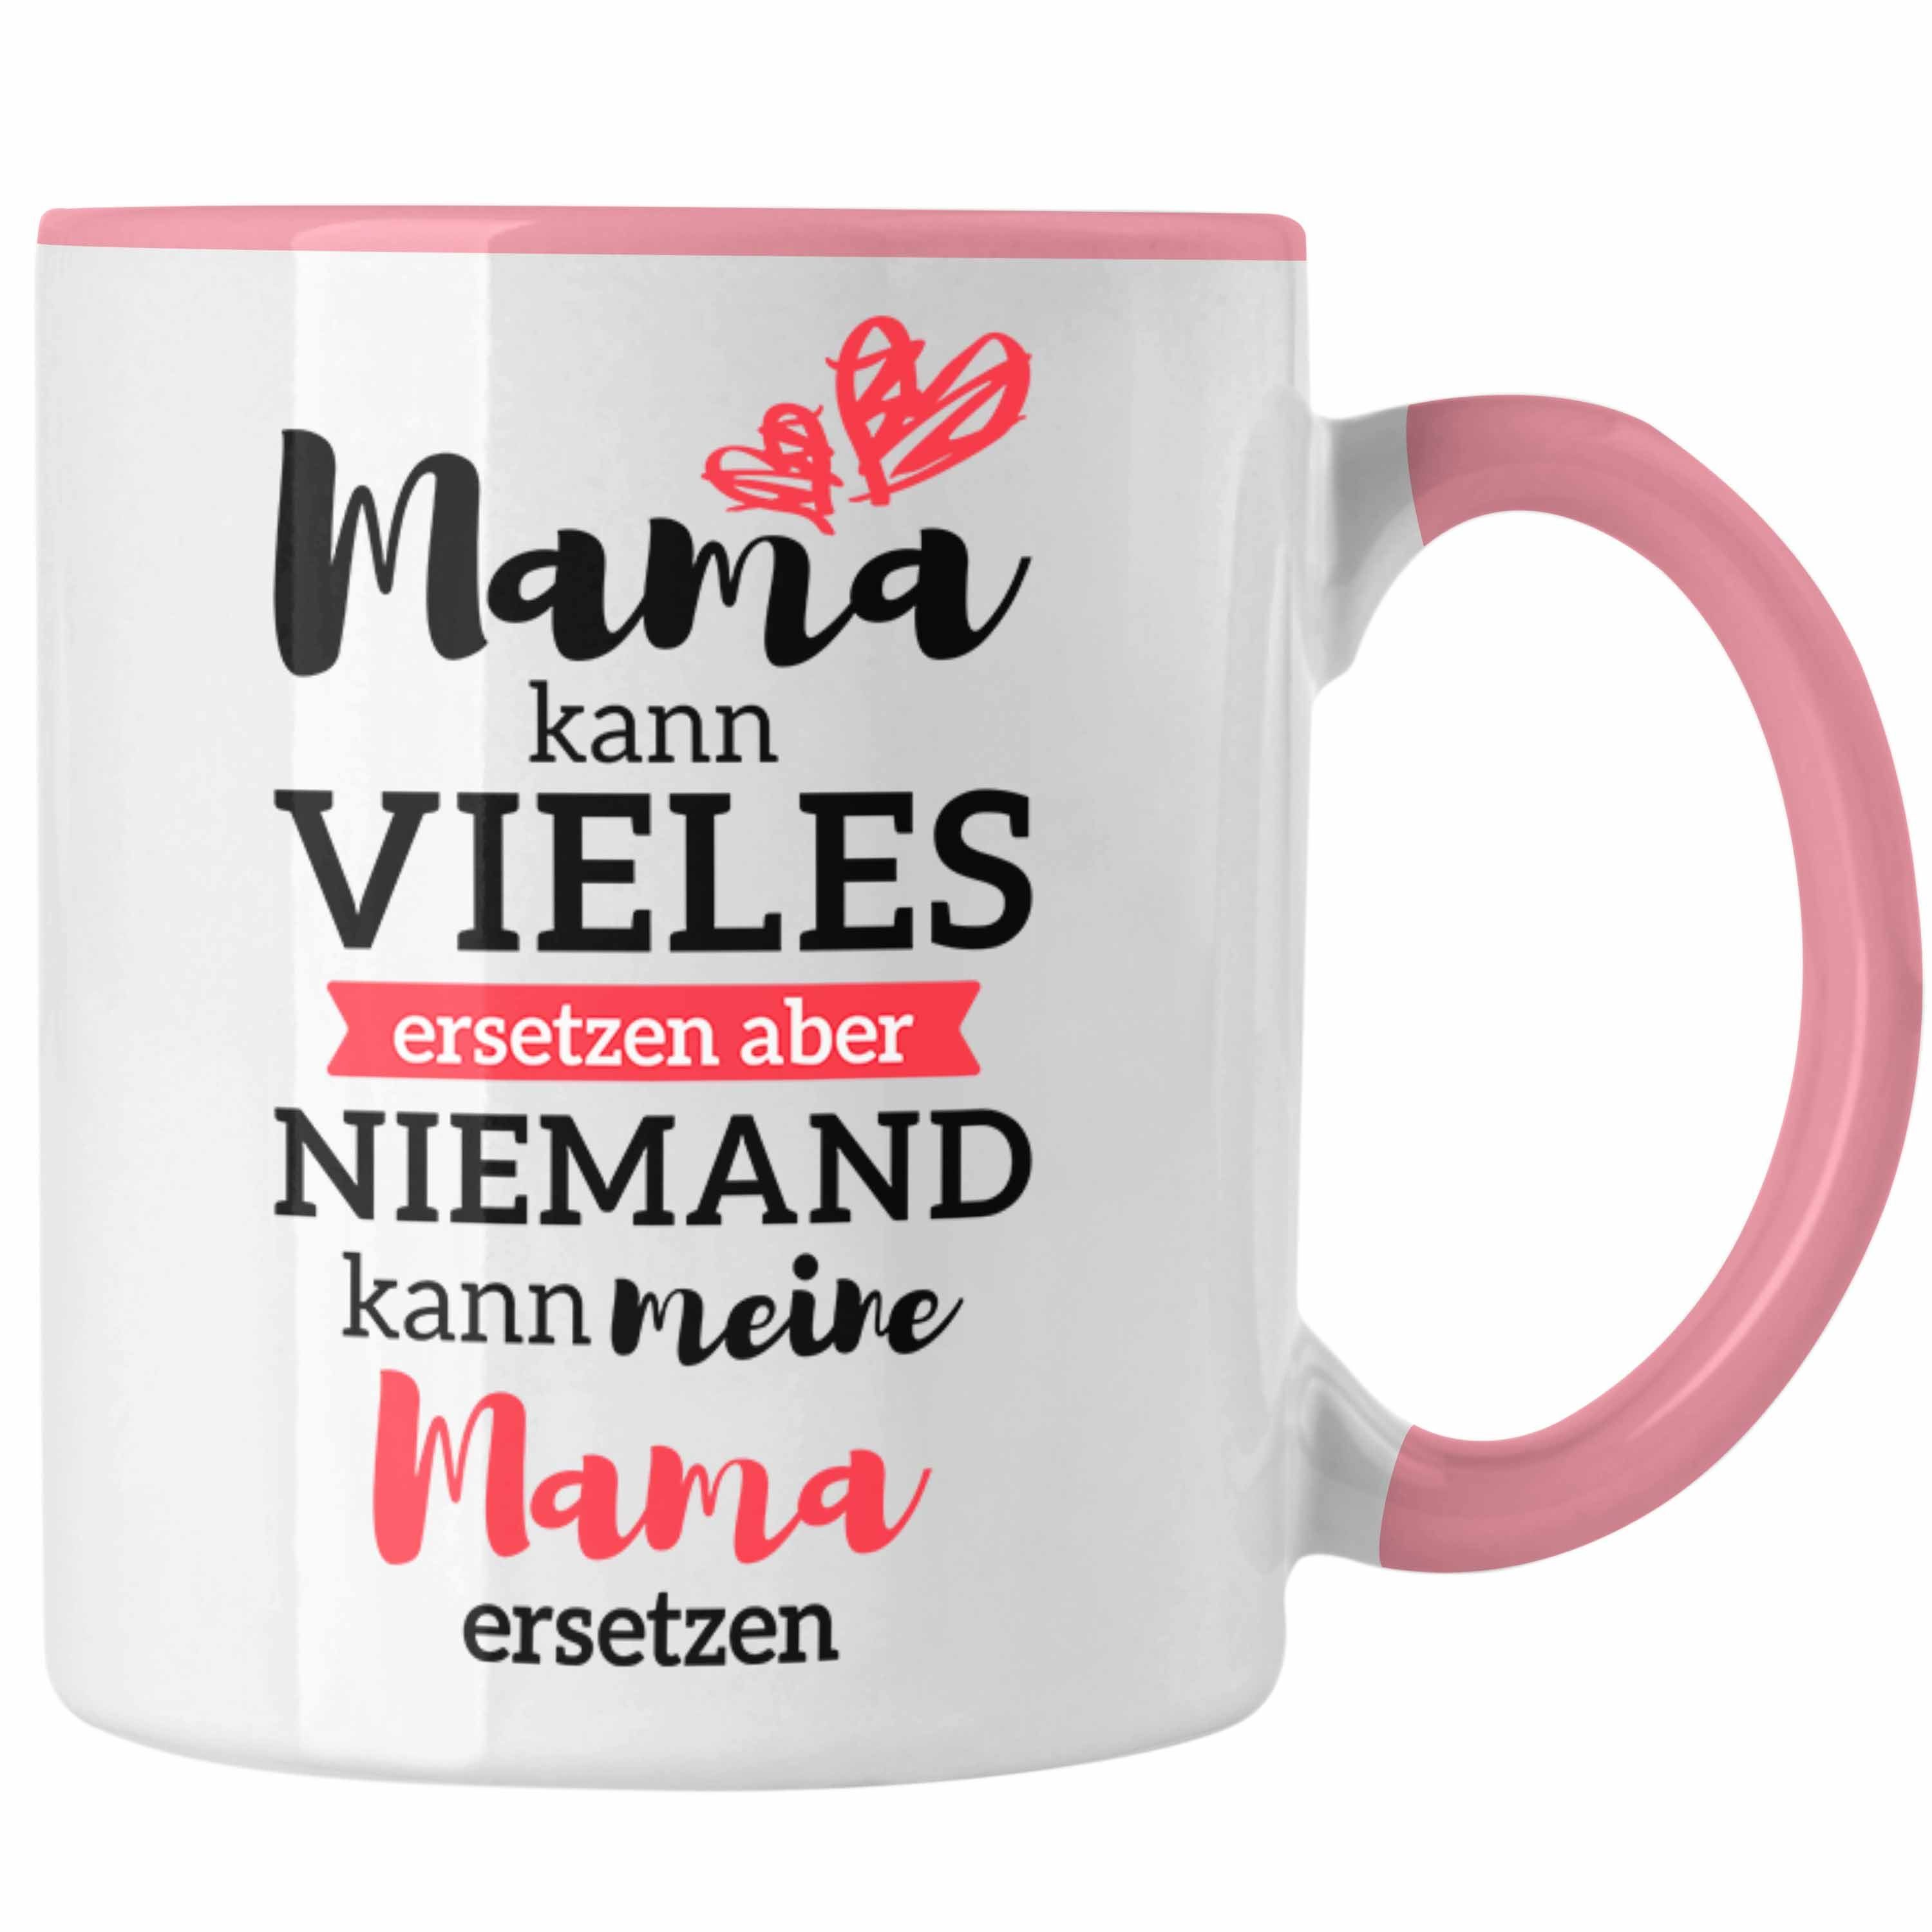 Trendation Tasse Trendation - Mama Tasse mit Spruch Geschenk Muttertag von Tochter Sohn Mutter Kaffeetasse Rosa